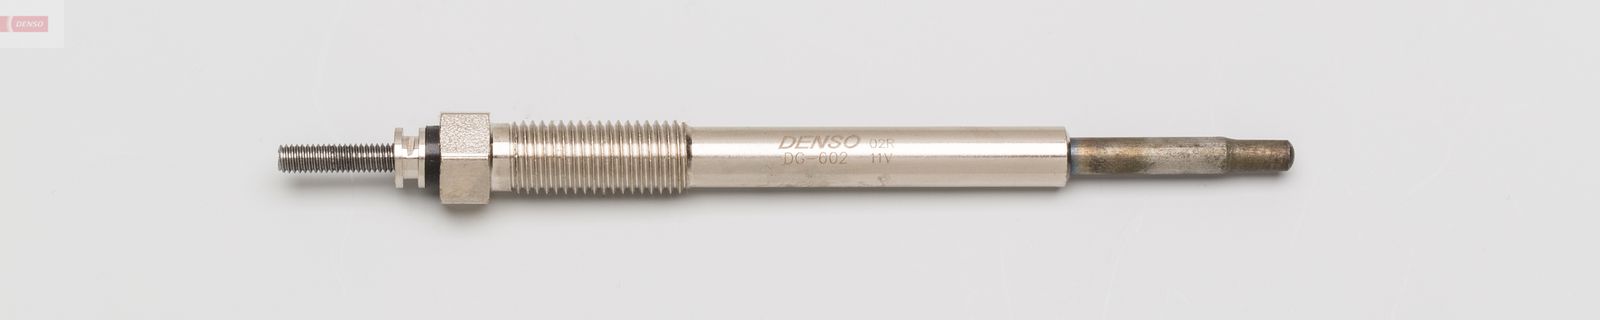 Žhavící svíčka DENSO DG-602